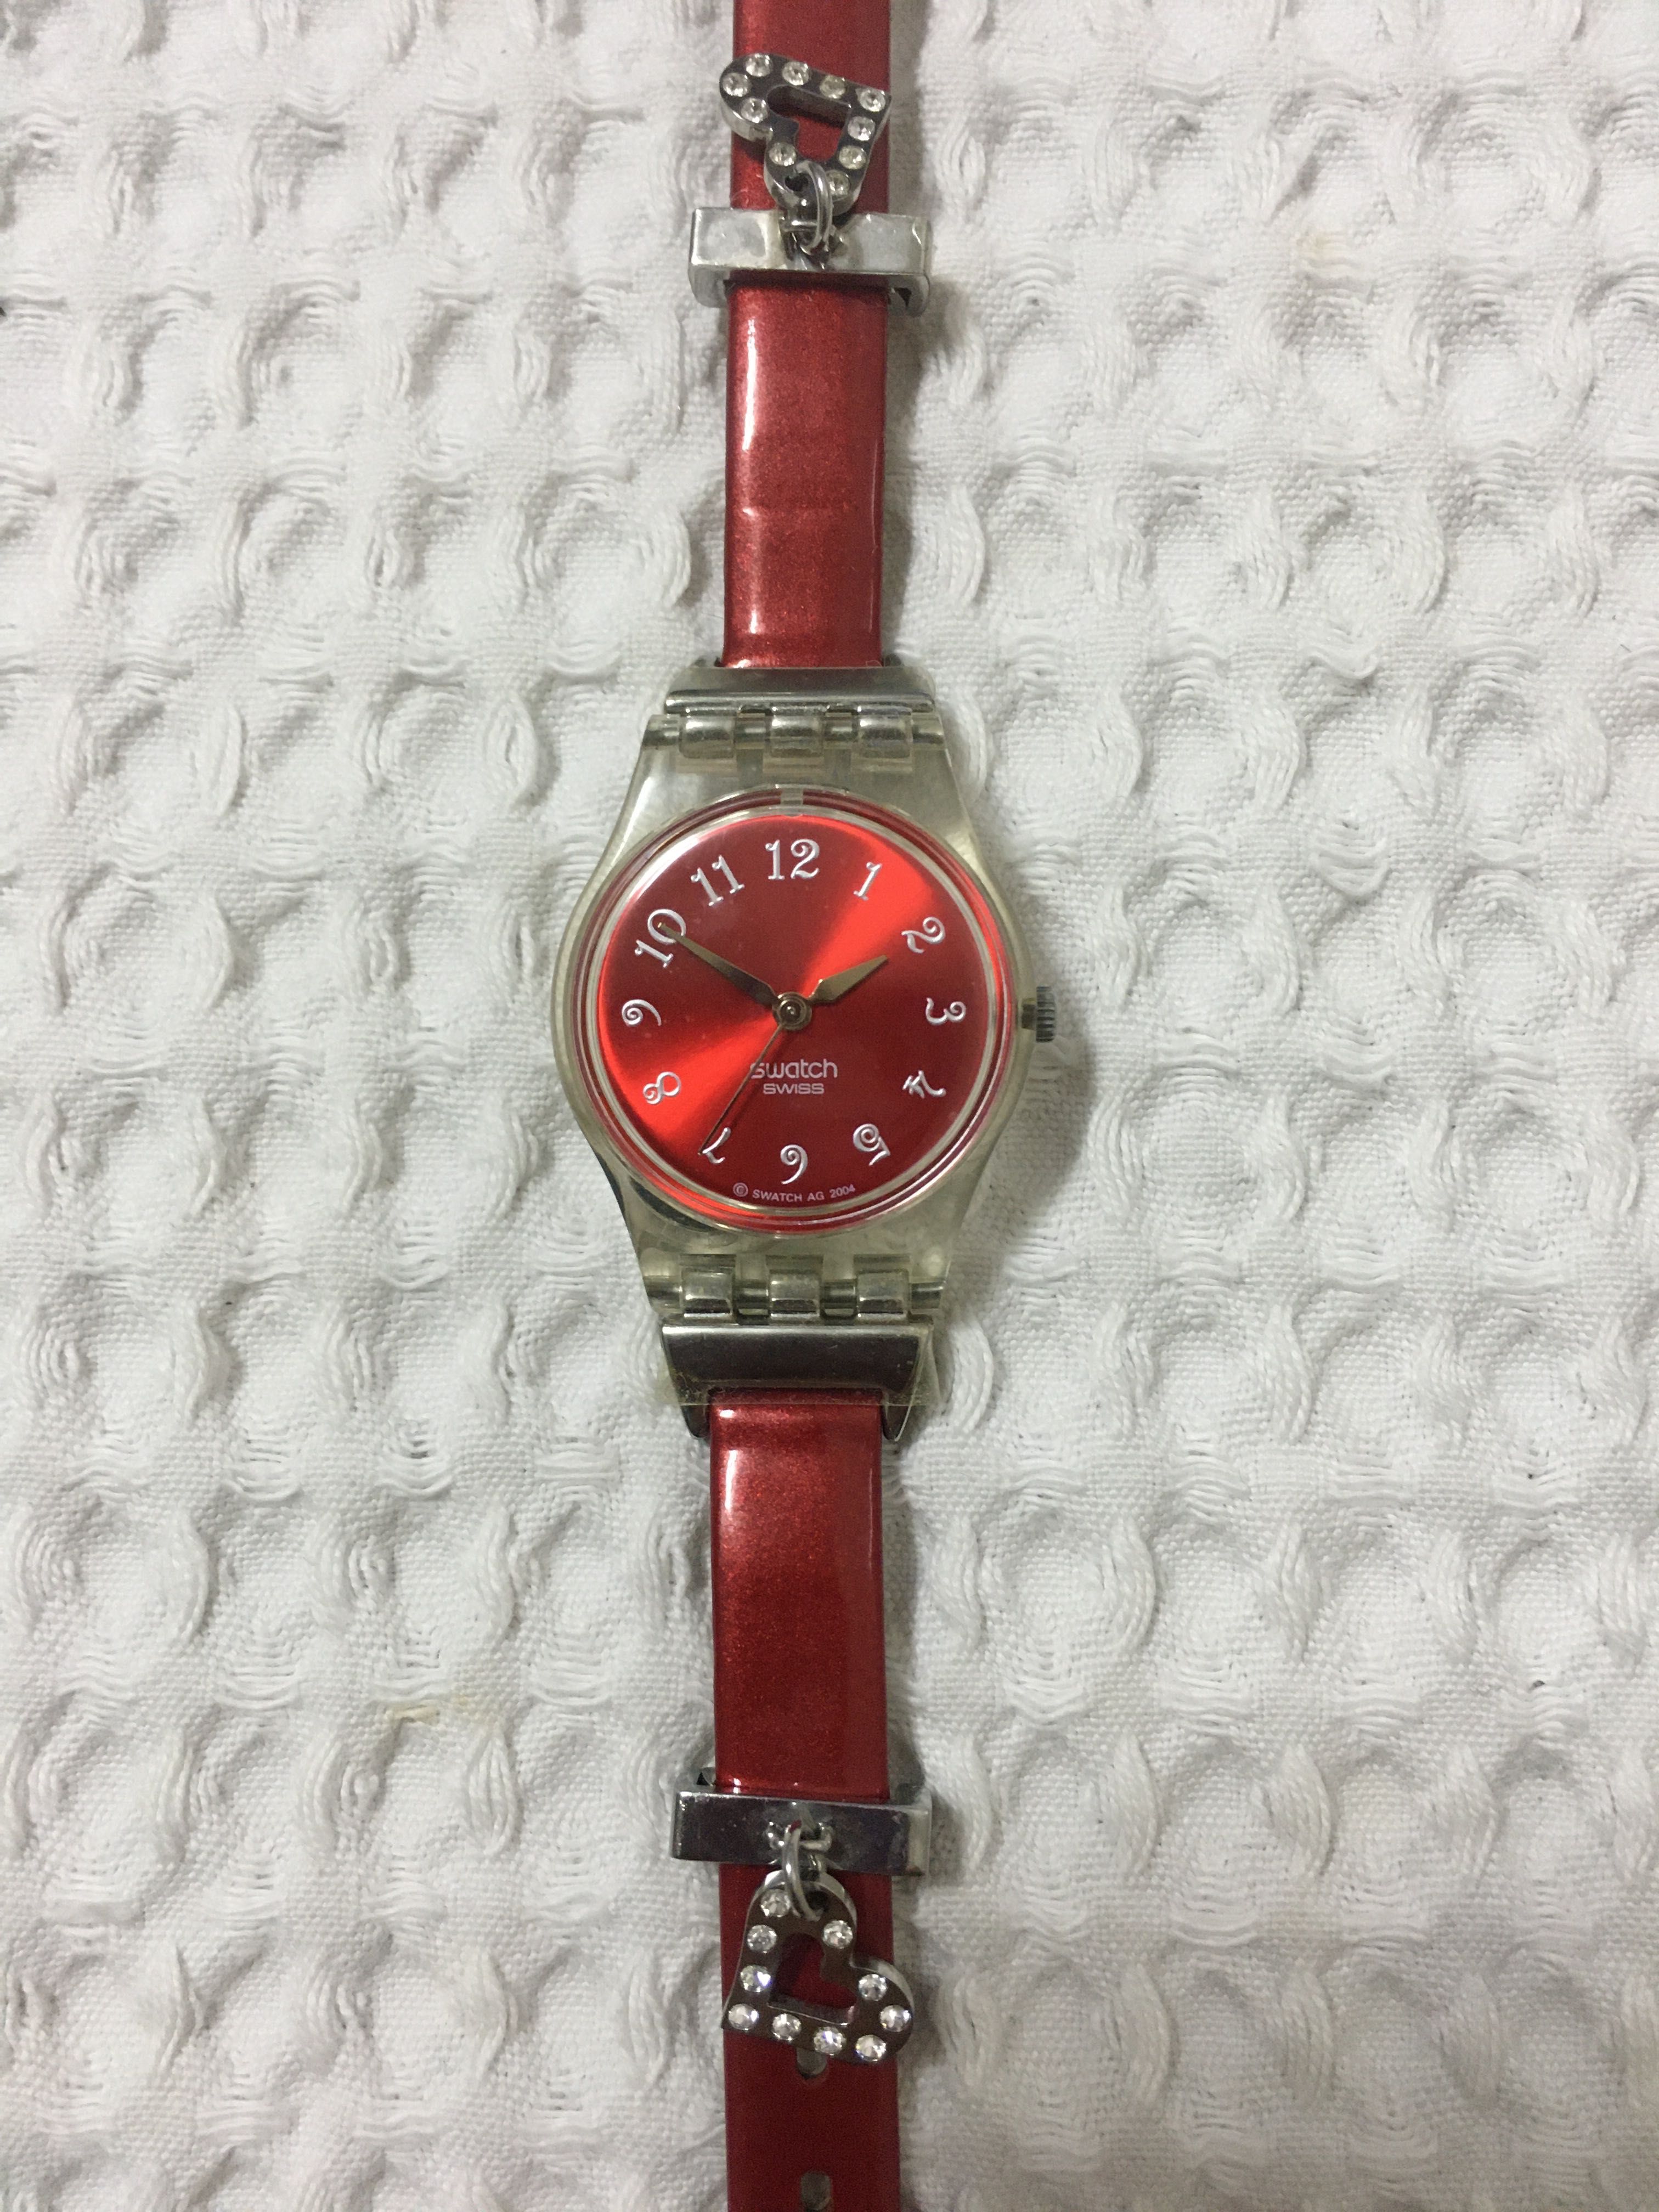 Relógio Swatch edição limitada